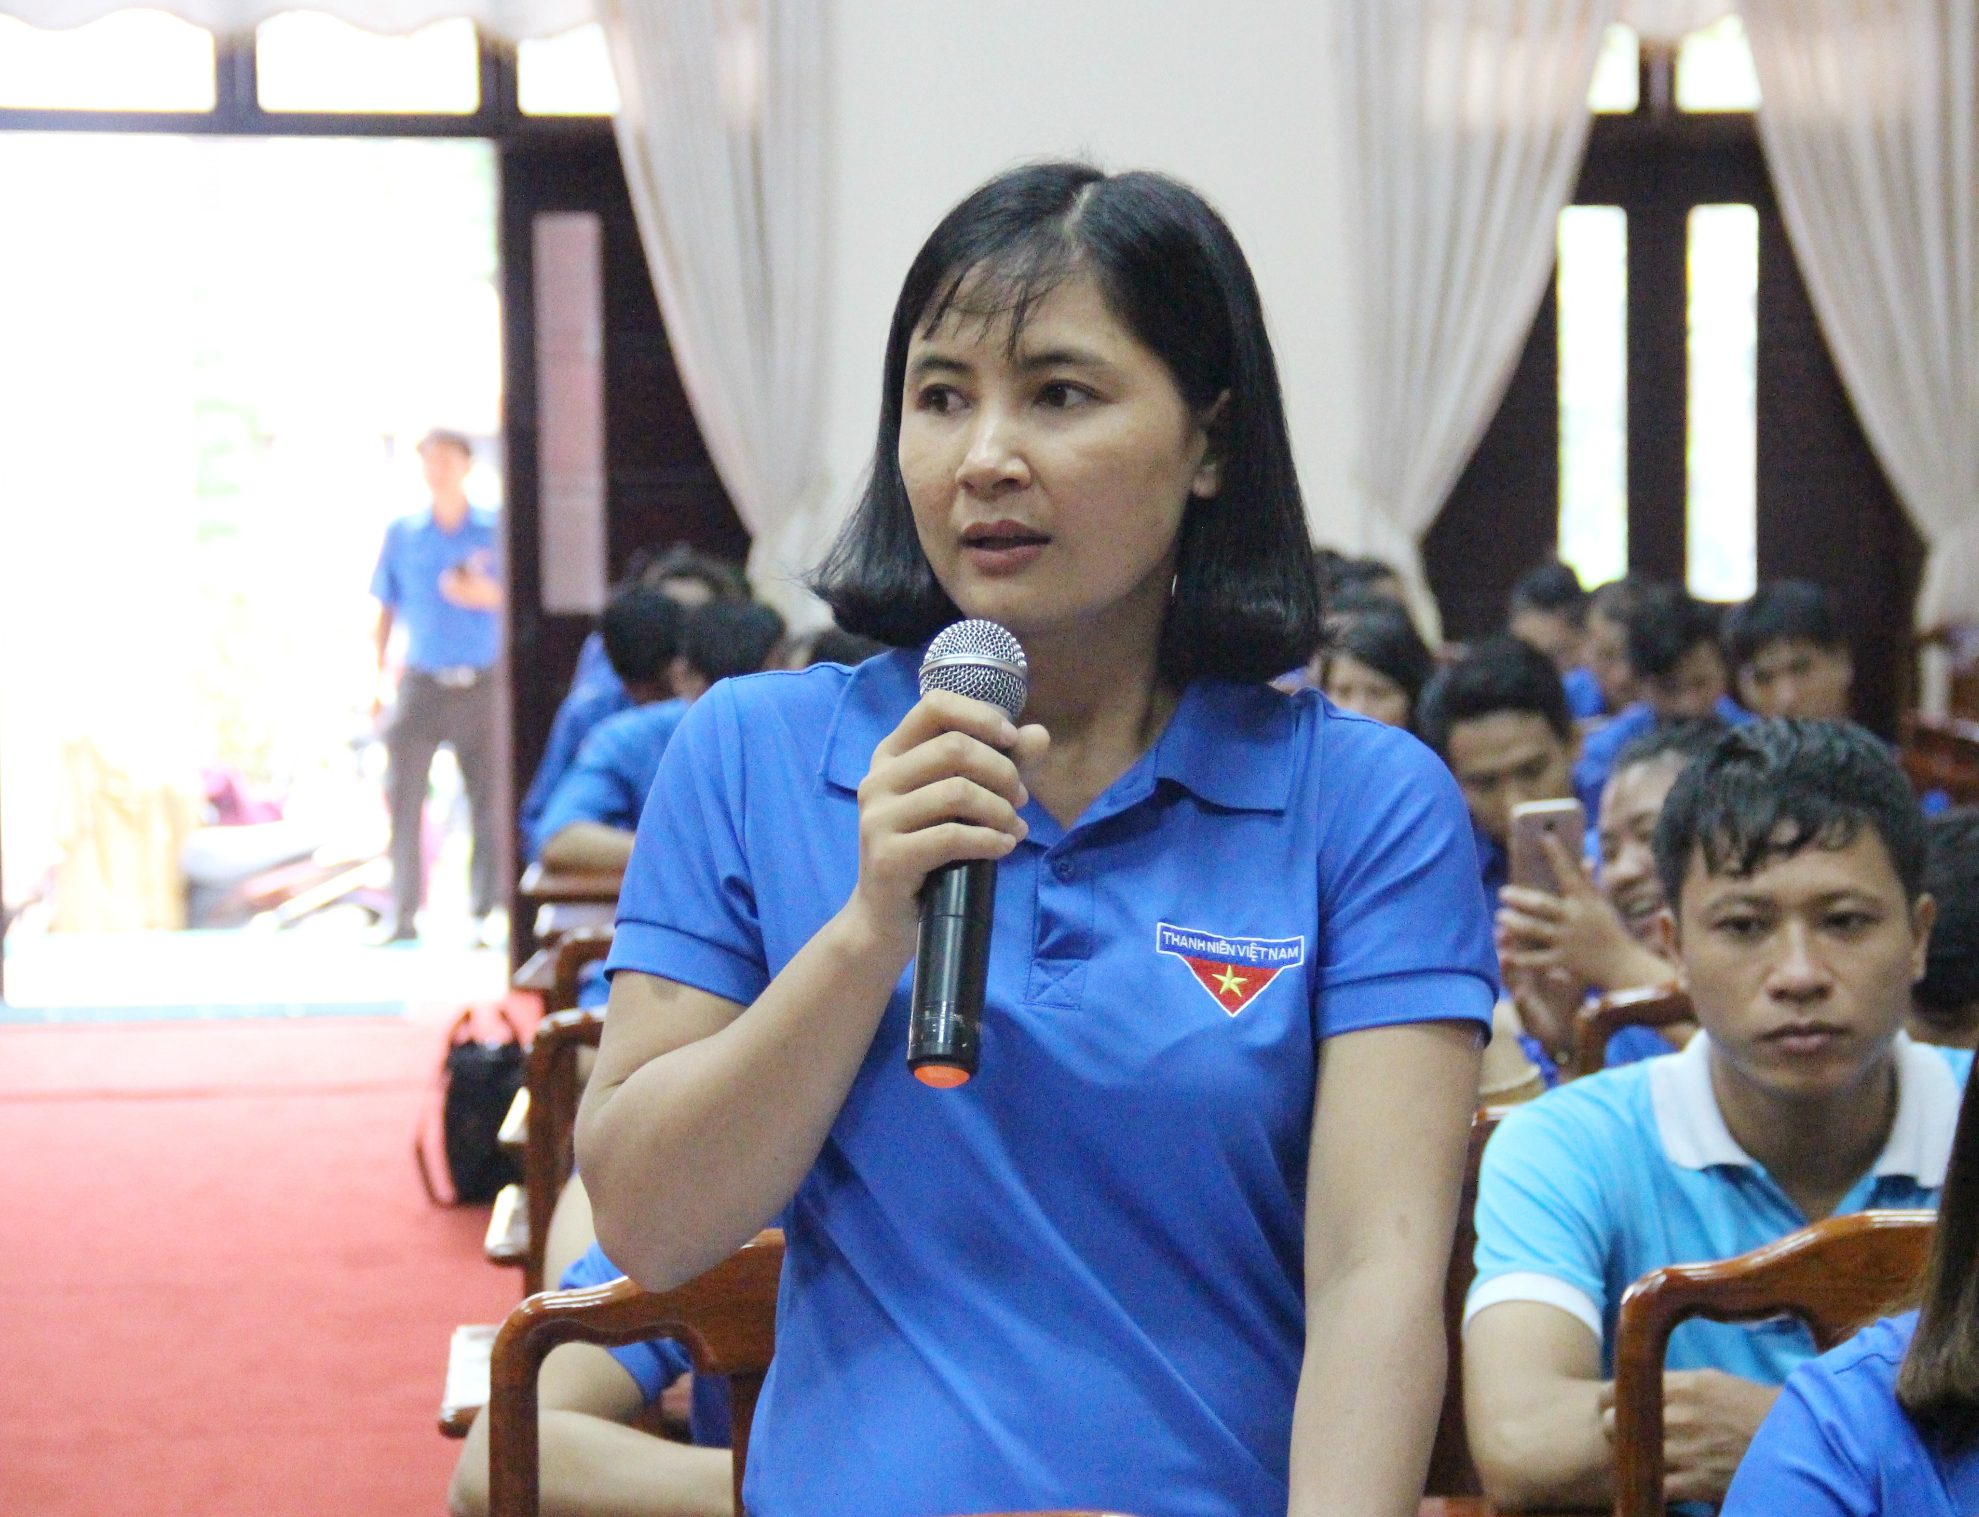 Đồng chí Phạm Thị Lượt - đại điện đoàn viên thanh niên khối Doanh nghiệp đóng góp ý kiến sửa đổi Luật Thanh niên